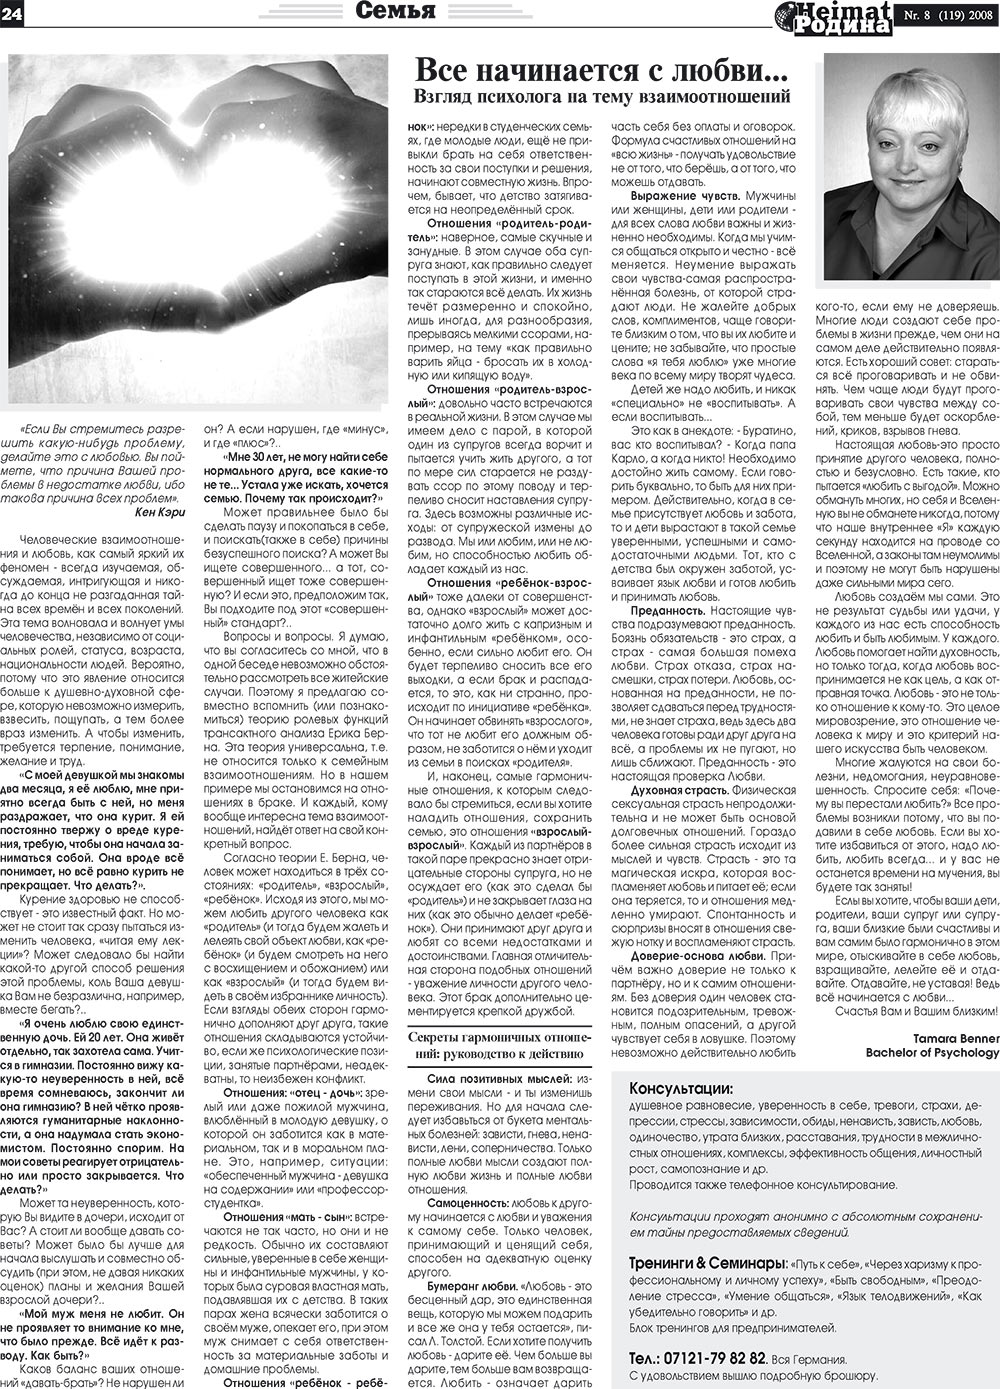 Heimat-Родина (газета). 2008 год, номер 8, стр. 24